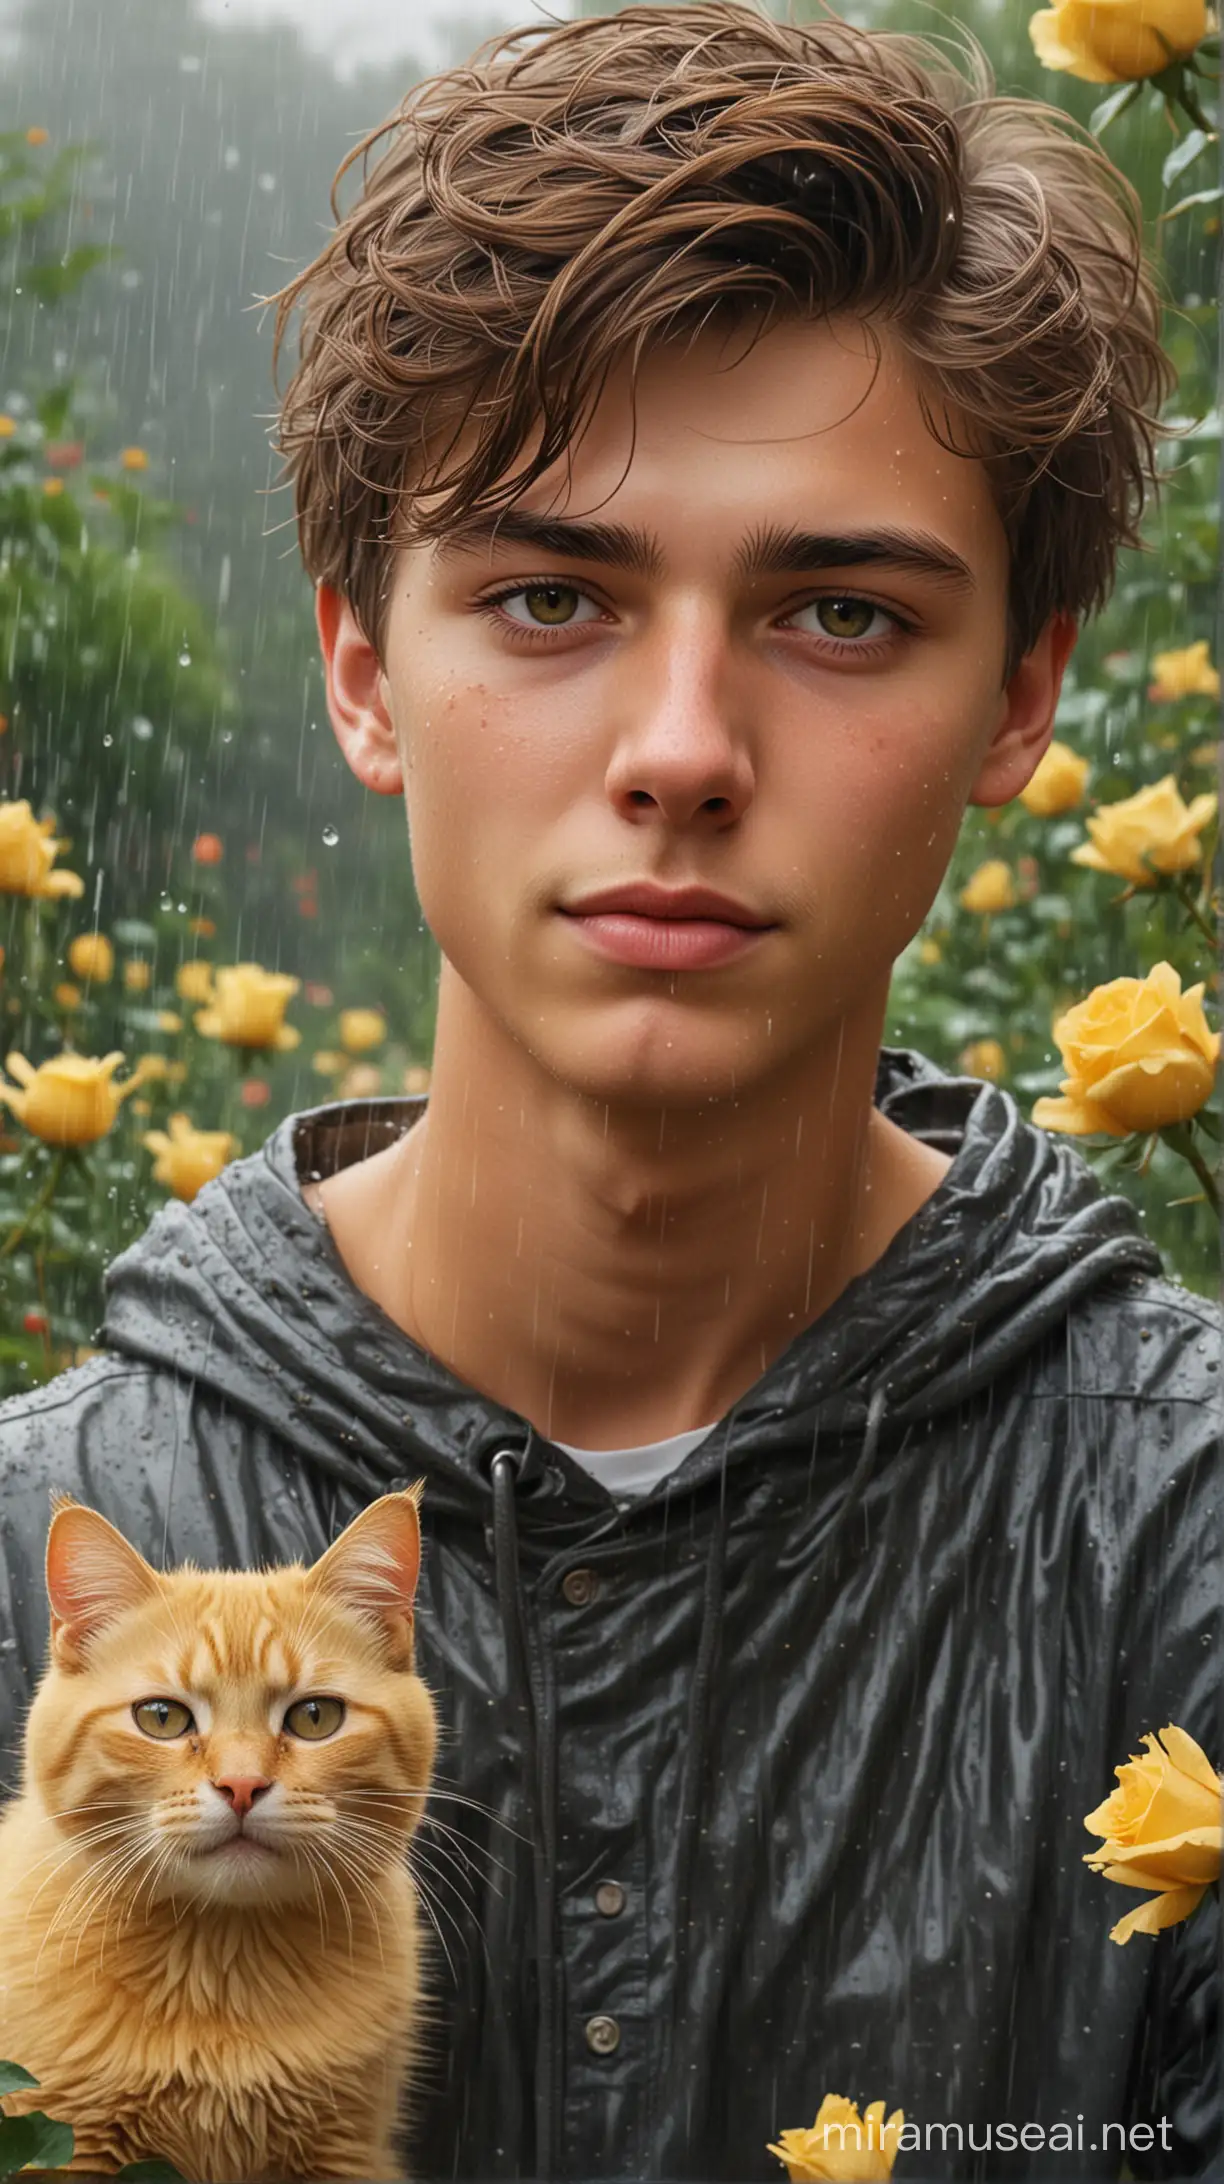 buatkan saya potret seorang pemuda tampan umur 18 tahun, berambut pendek, rambut terlihat tertiup angin, wajah lonjong, sedang menggendong seekor kucing kuning, latar belakang taman mawar hujan lebat nyata realistis halus dan original face.